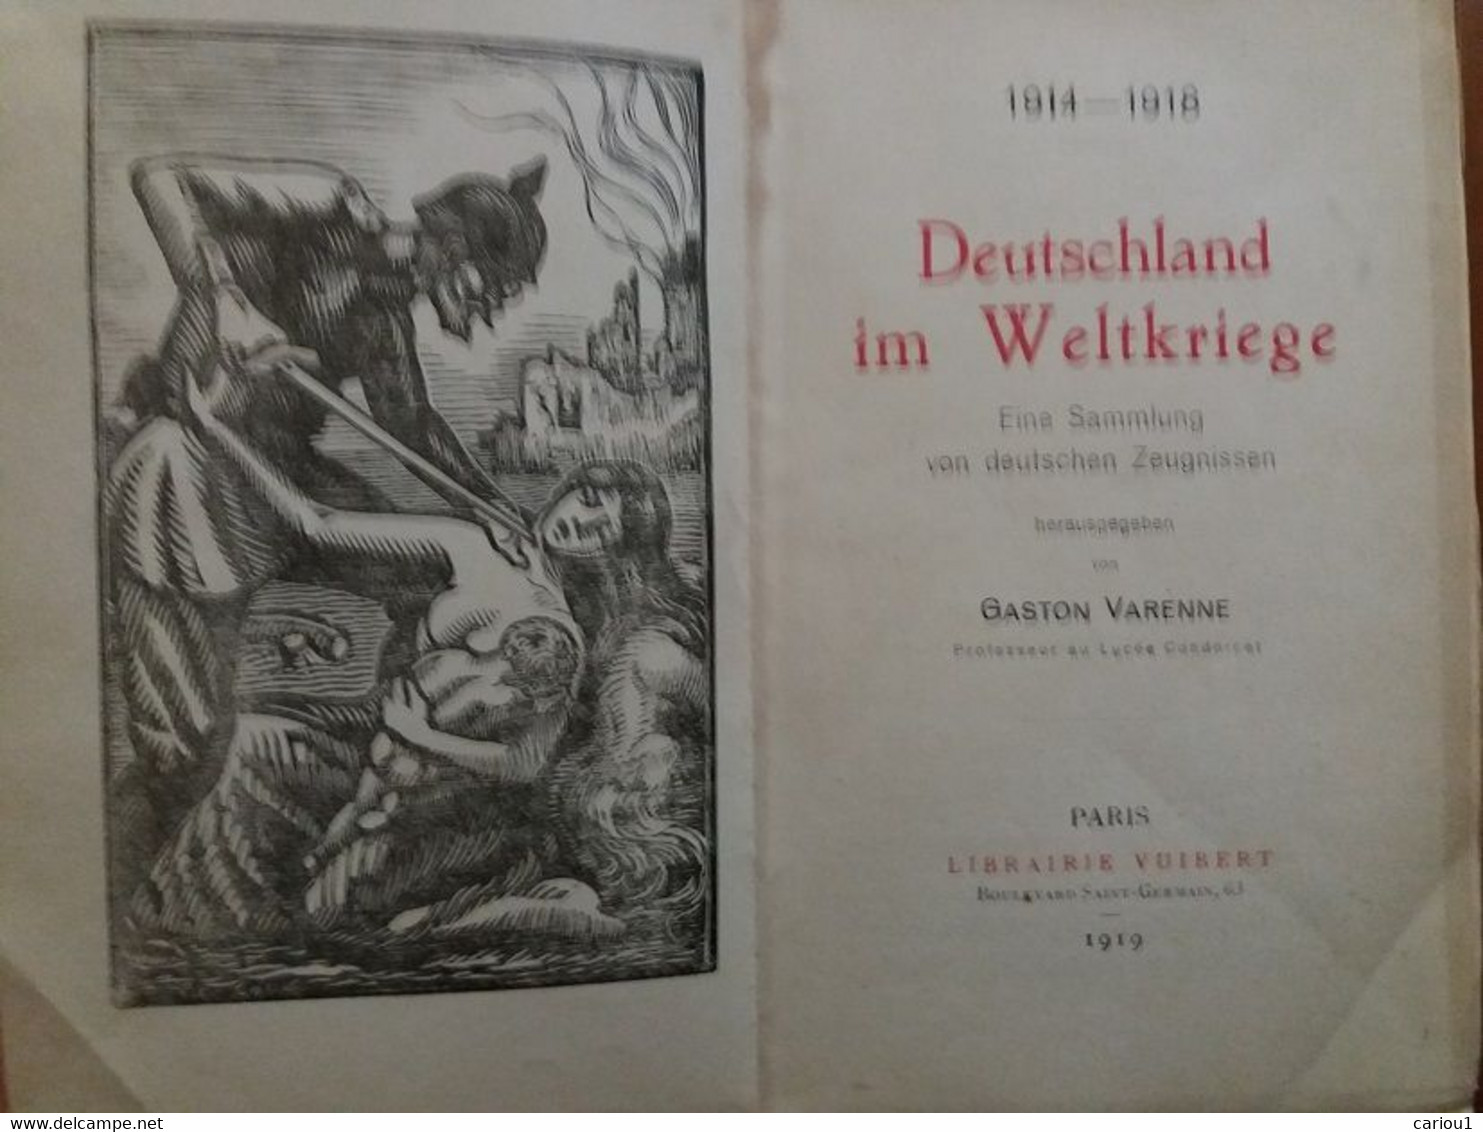 C1  14 18 ALLEMAGNE Varennne DEUTSCHLAND IM WELTKRIEGE 1919 Anthologie En Allemand Port Inclus France - German